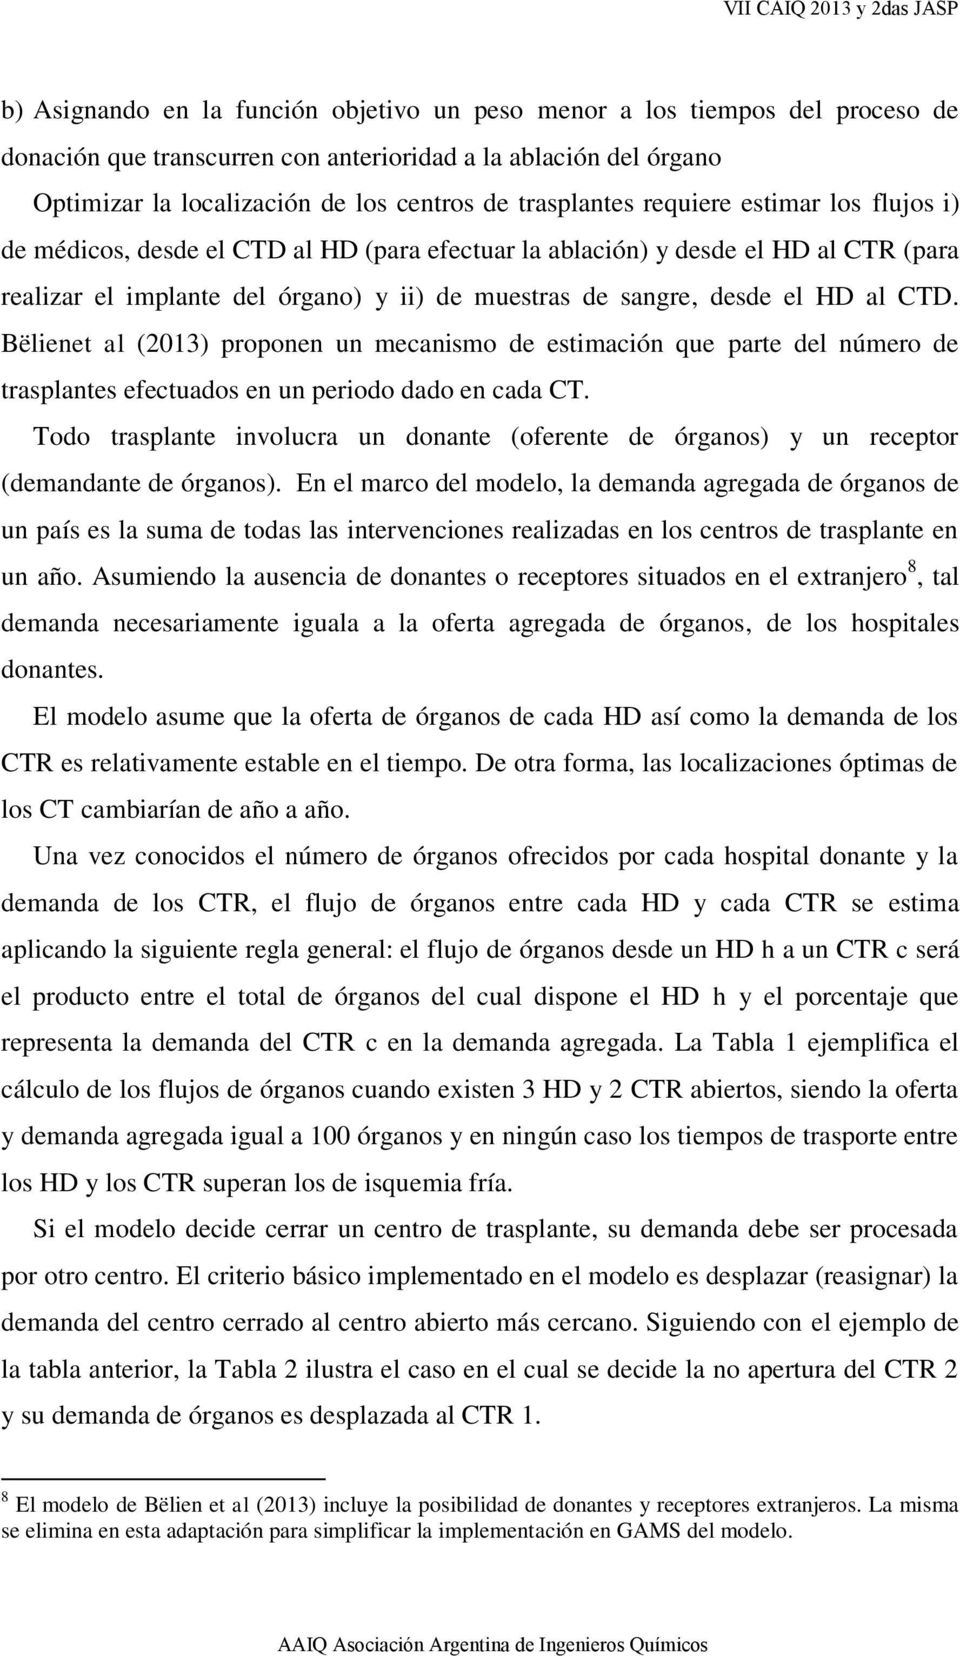 HD al CTD. Bëlienet al (2013) proponen un mecanismo de estimación que parte del número de trasplantes efectuados en un periodo dado en cada CT.